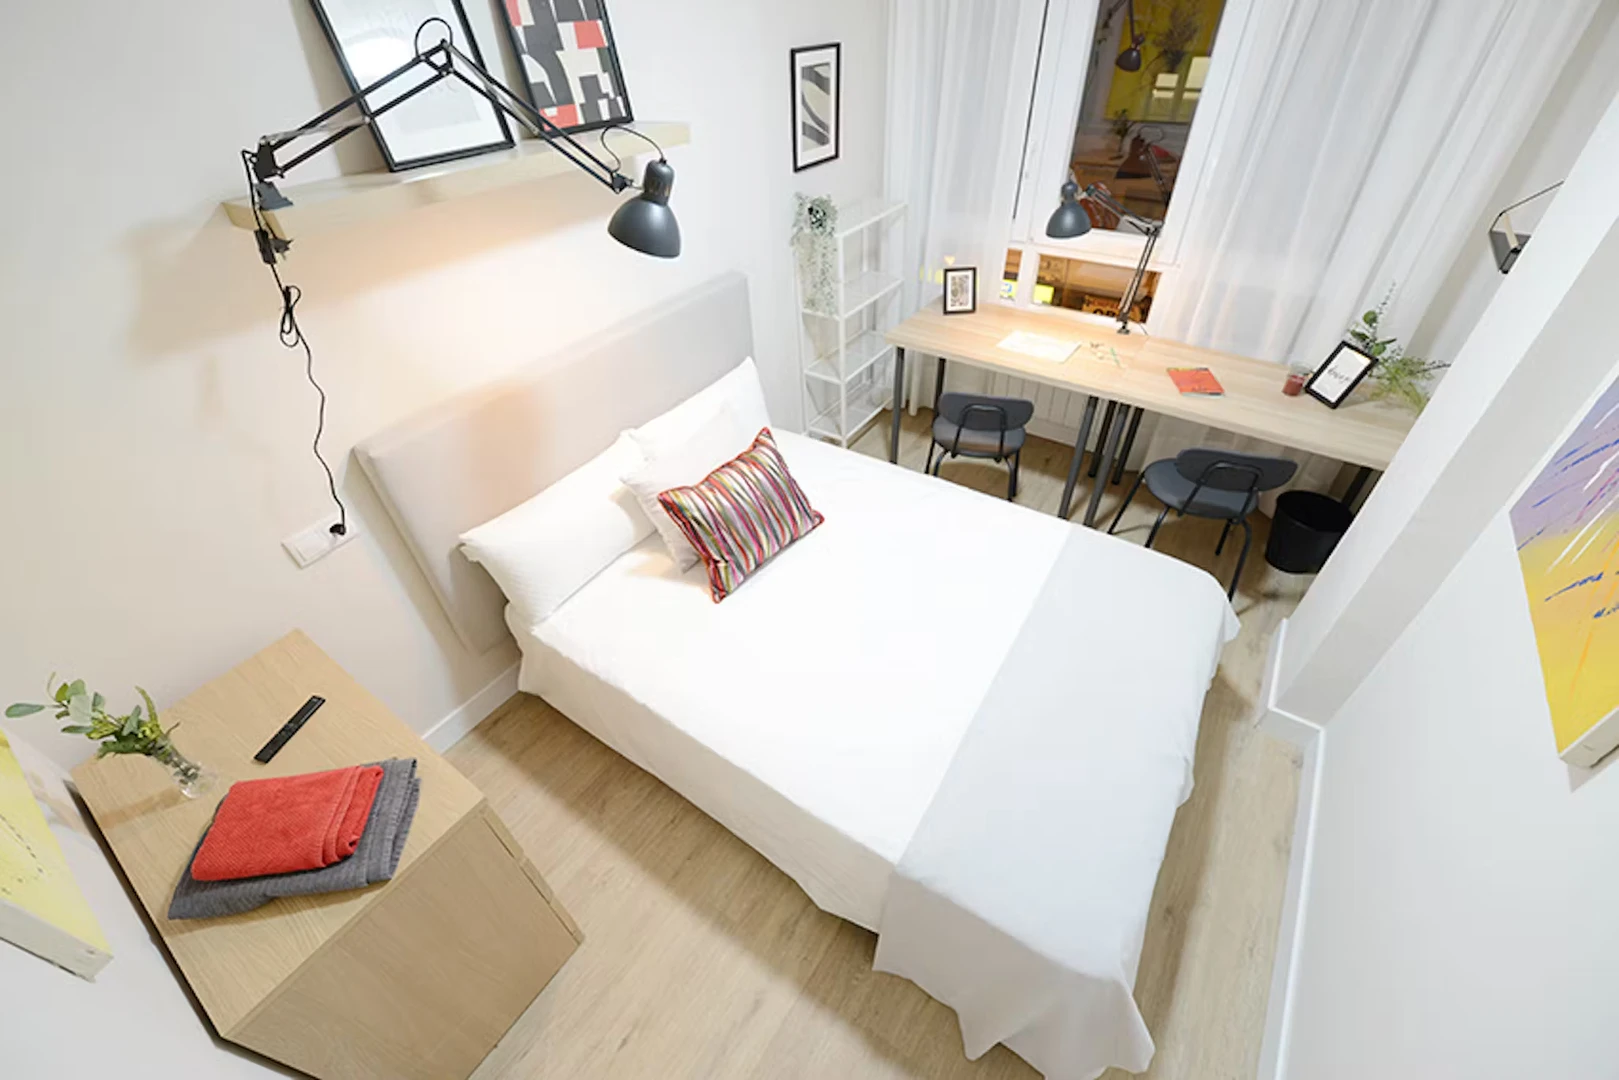 Quarto para alugar com cama de casal em Bilbau